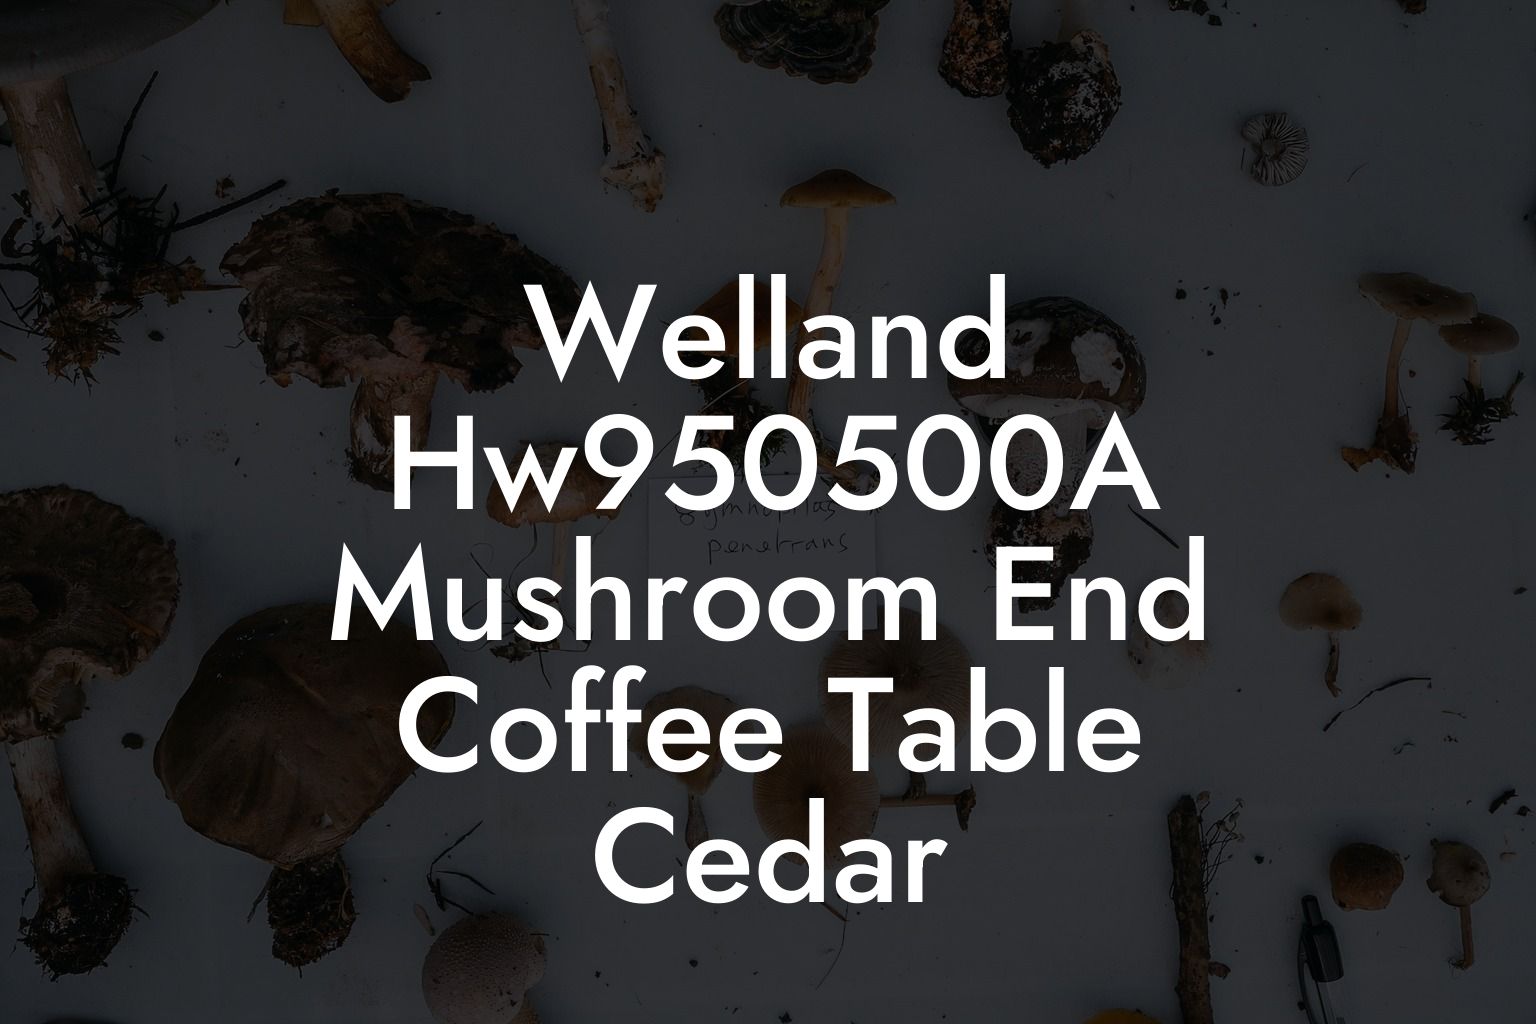 Welland Hw950500A Mushroom End Coffee Table Cedar